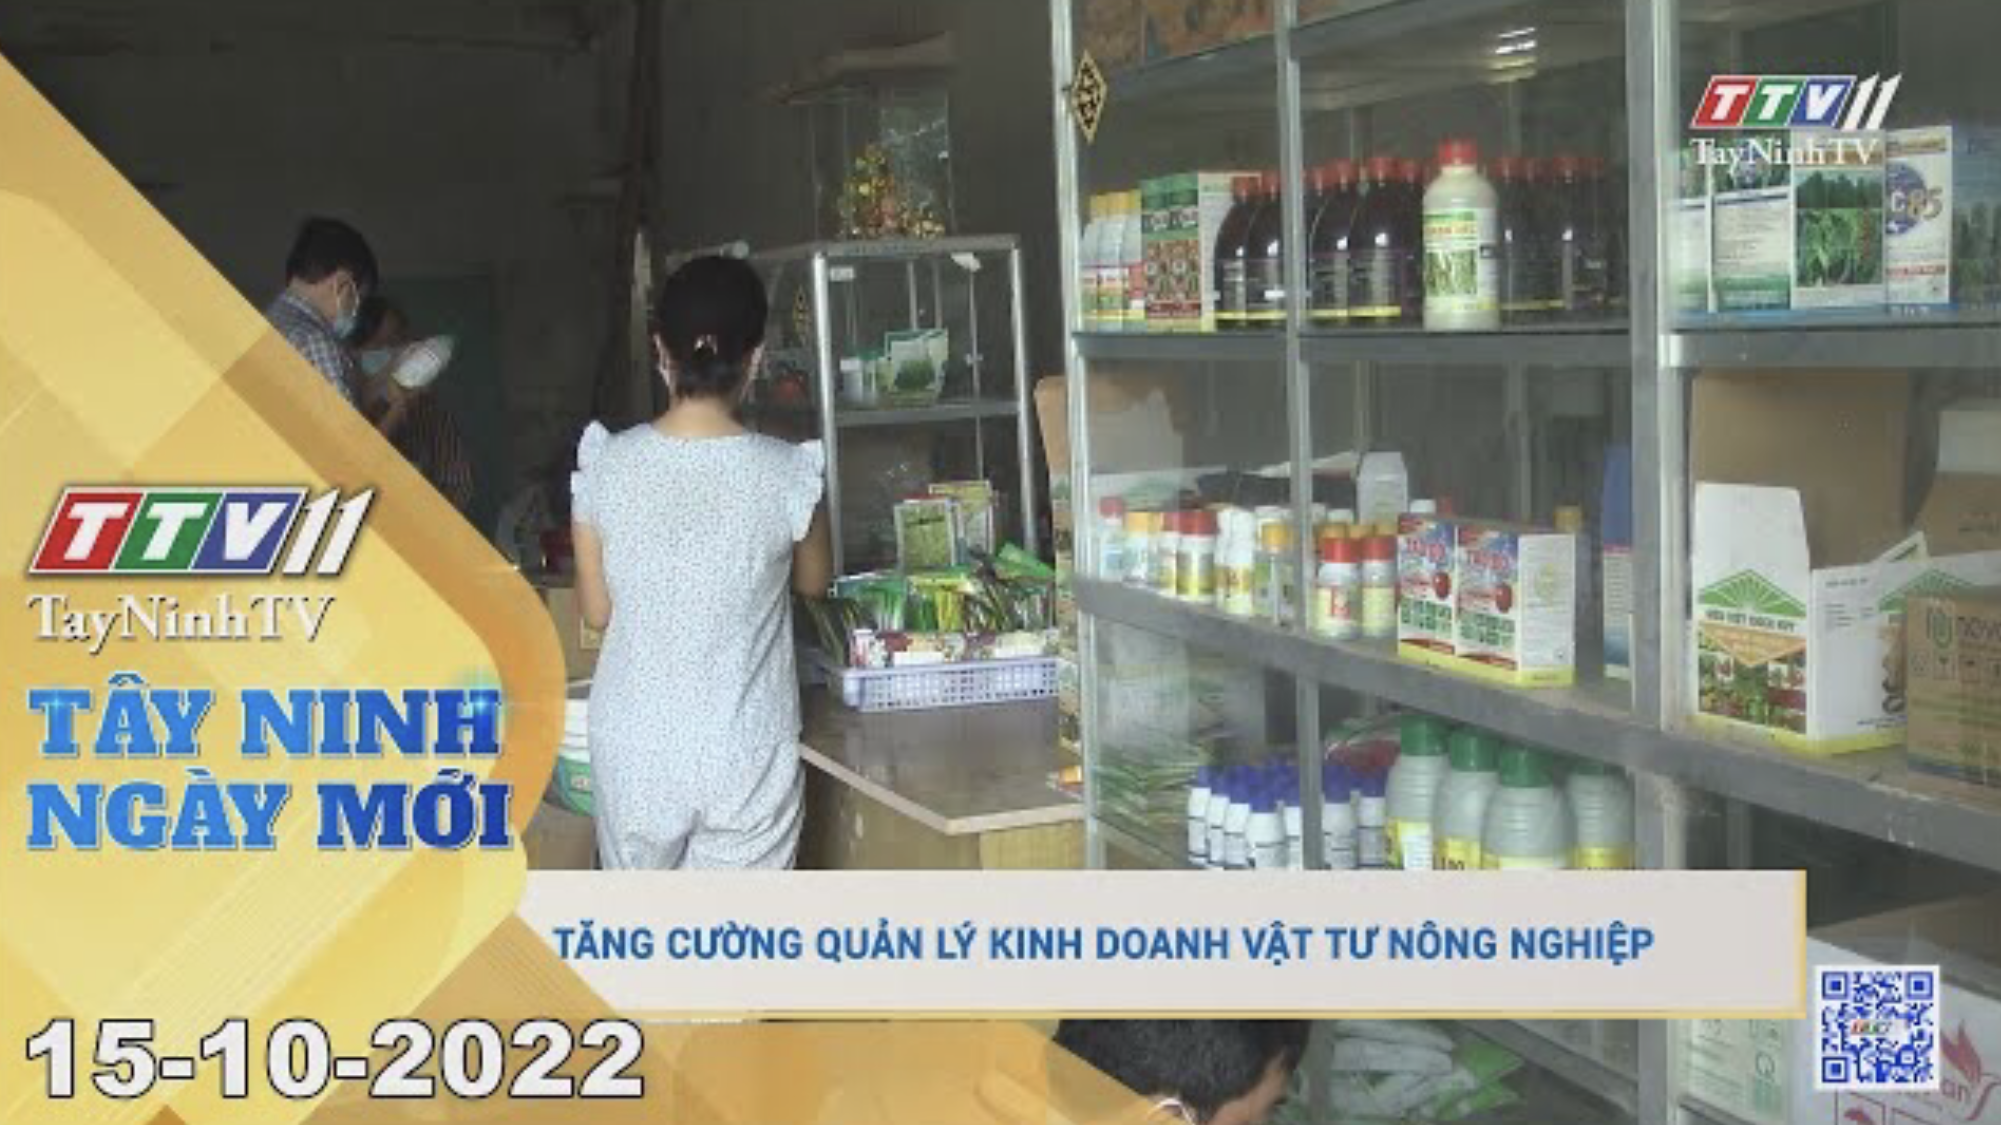 Tây Ninh ngày mới 15-10-2022 | Tin tức hôm nay | TayNinhTV